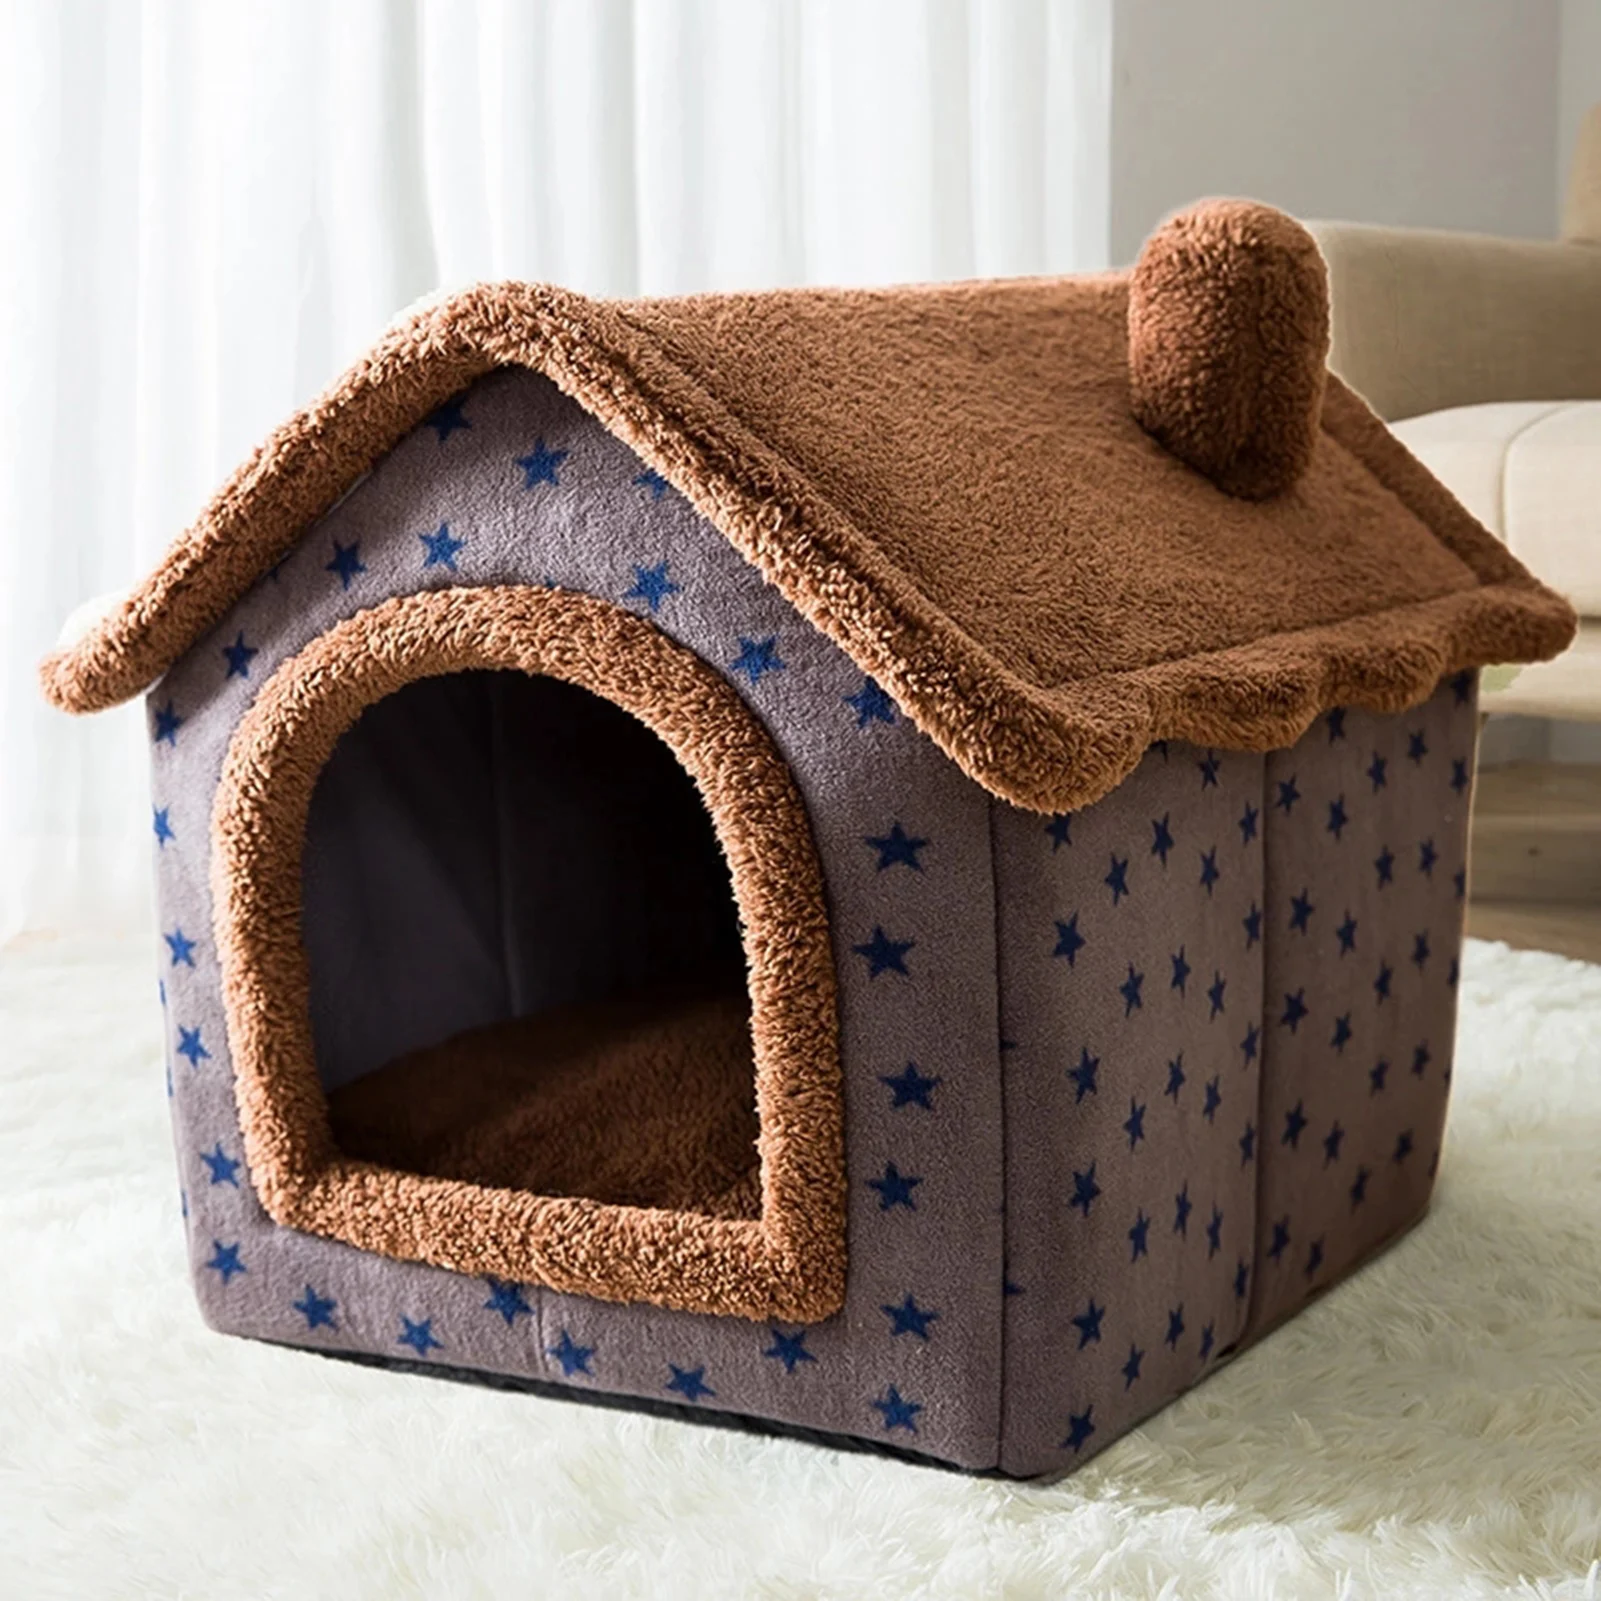 

Домик для домашних животных складная кровать с ковриком мягкая зимняя леопардовая подстилка домик будка гнездо для собаки кошки кровать дл...